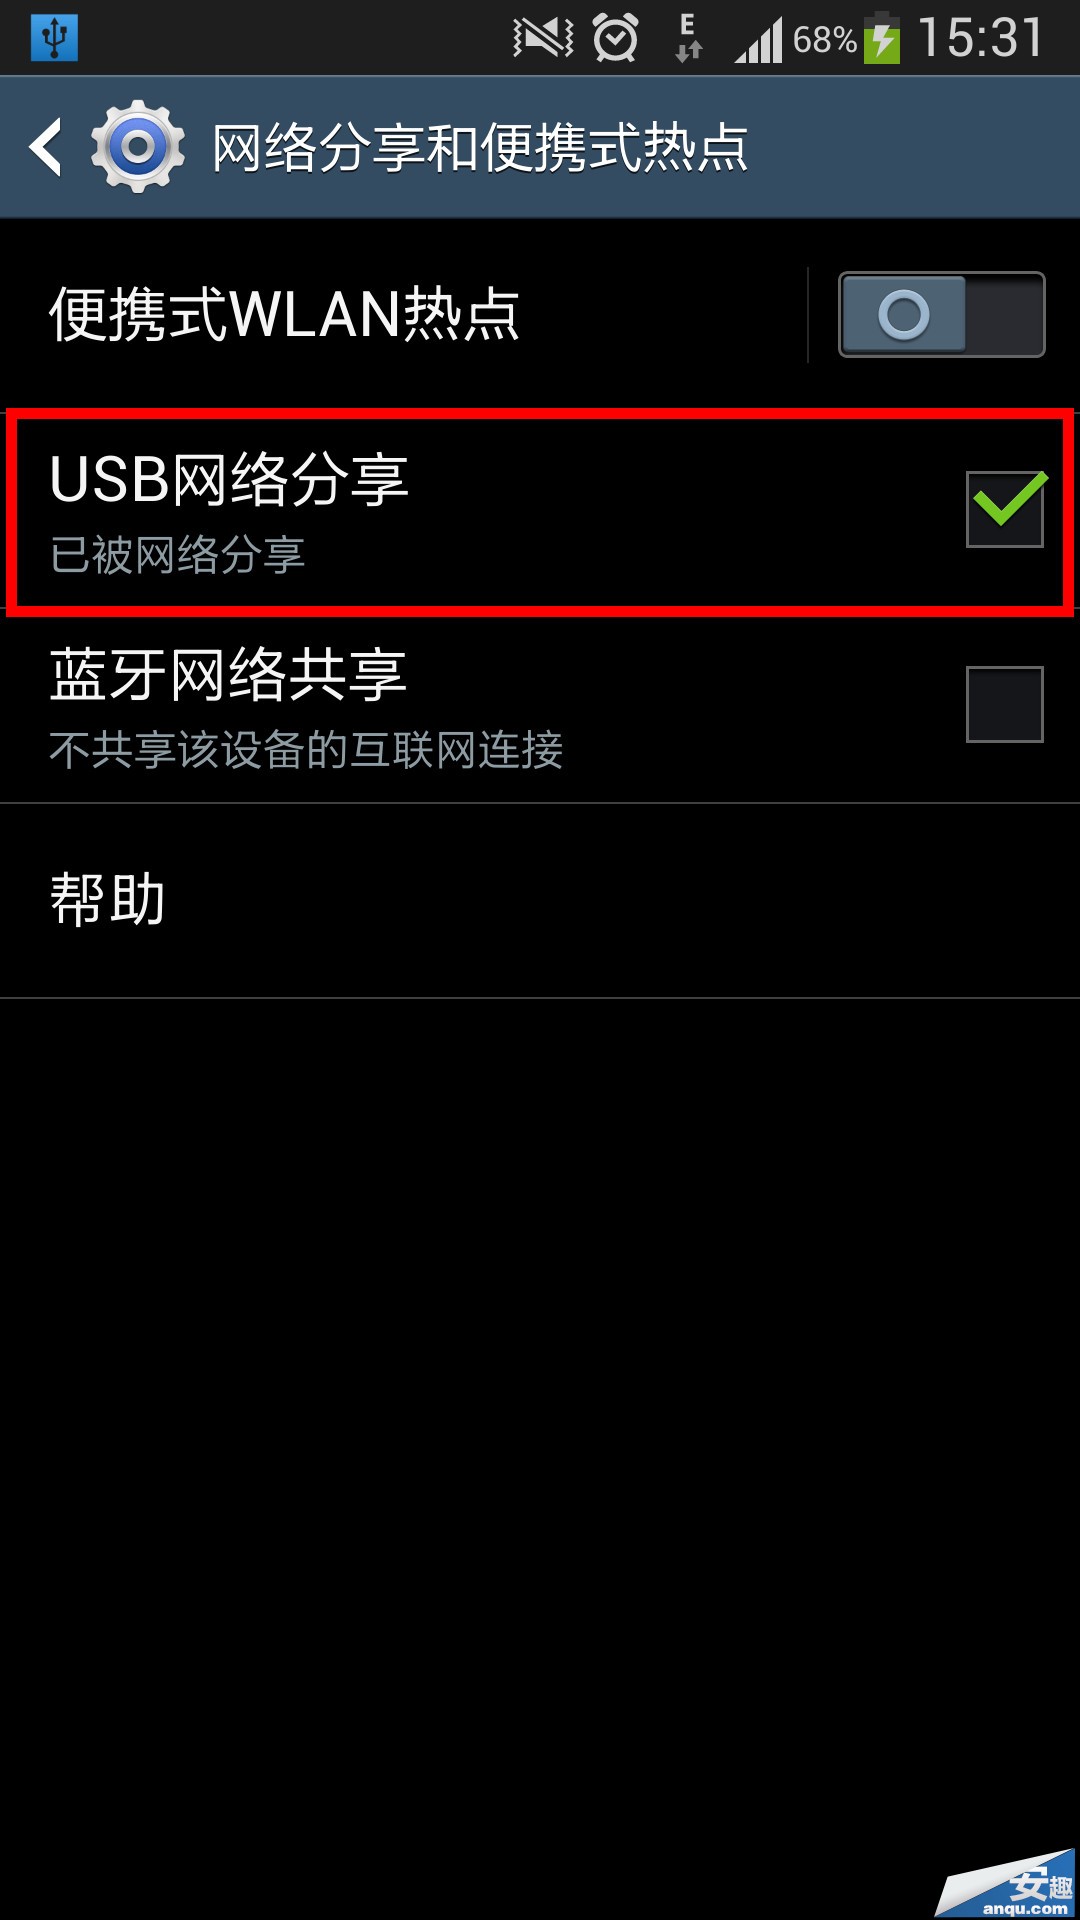 三星S4使用USB绑定上网功能15